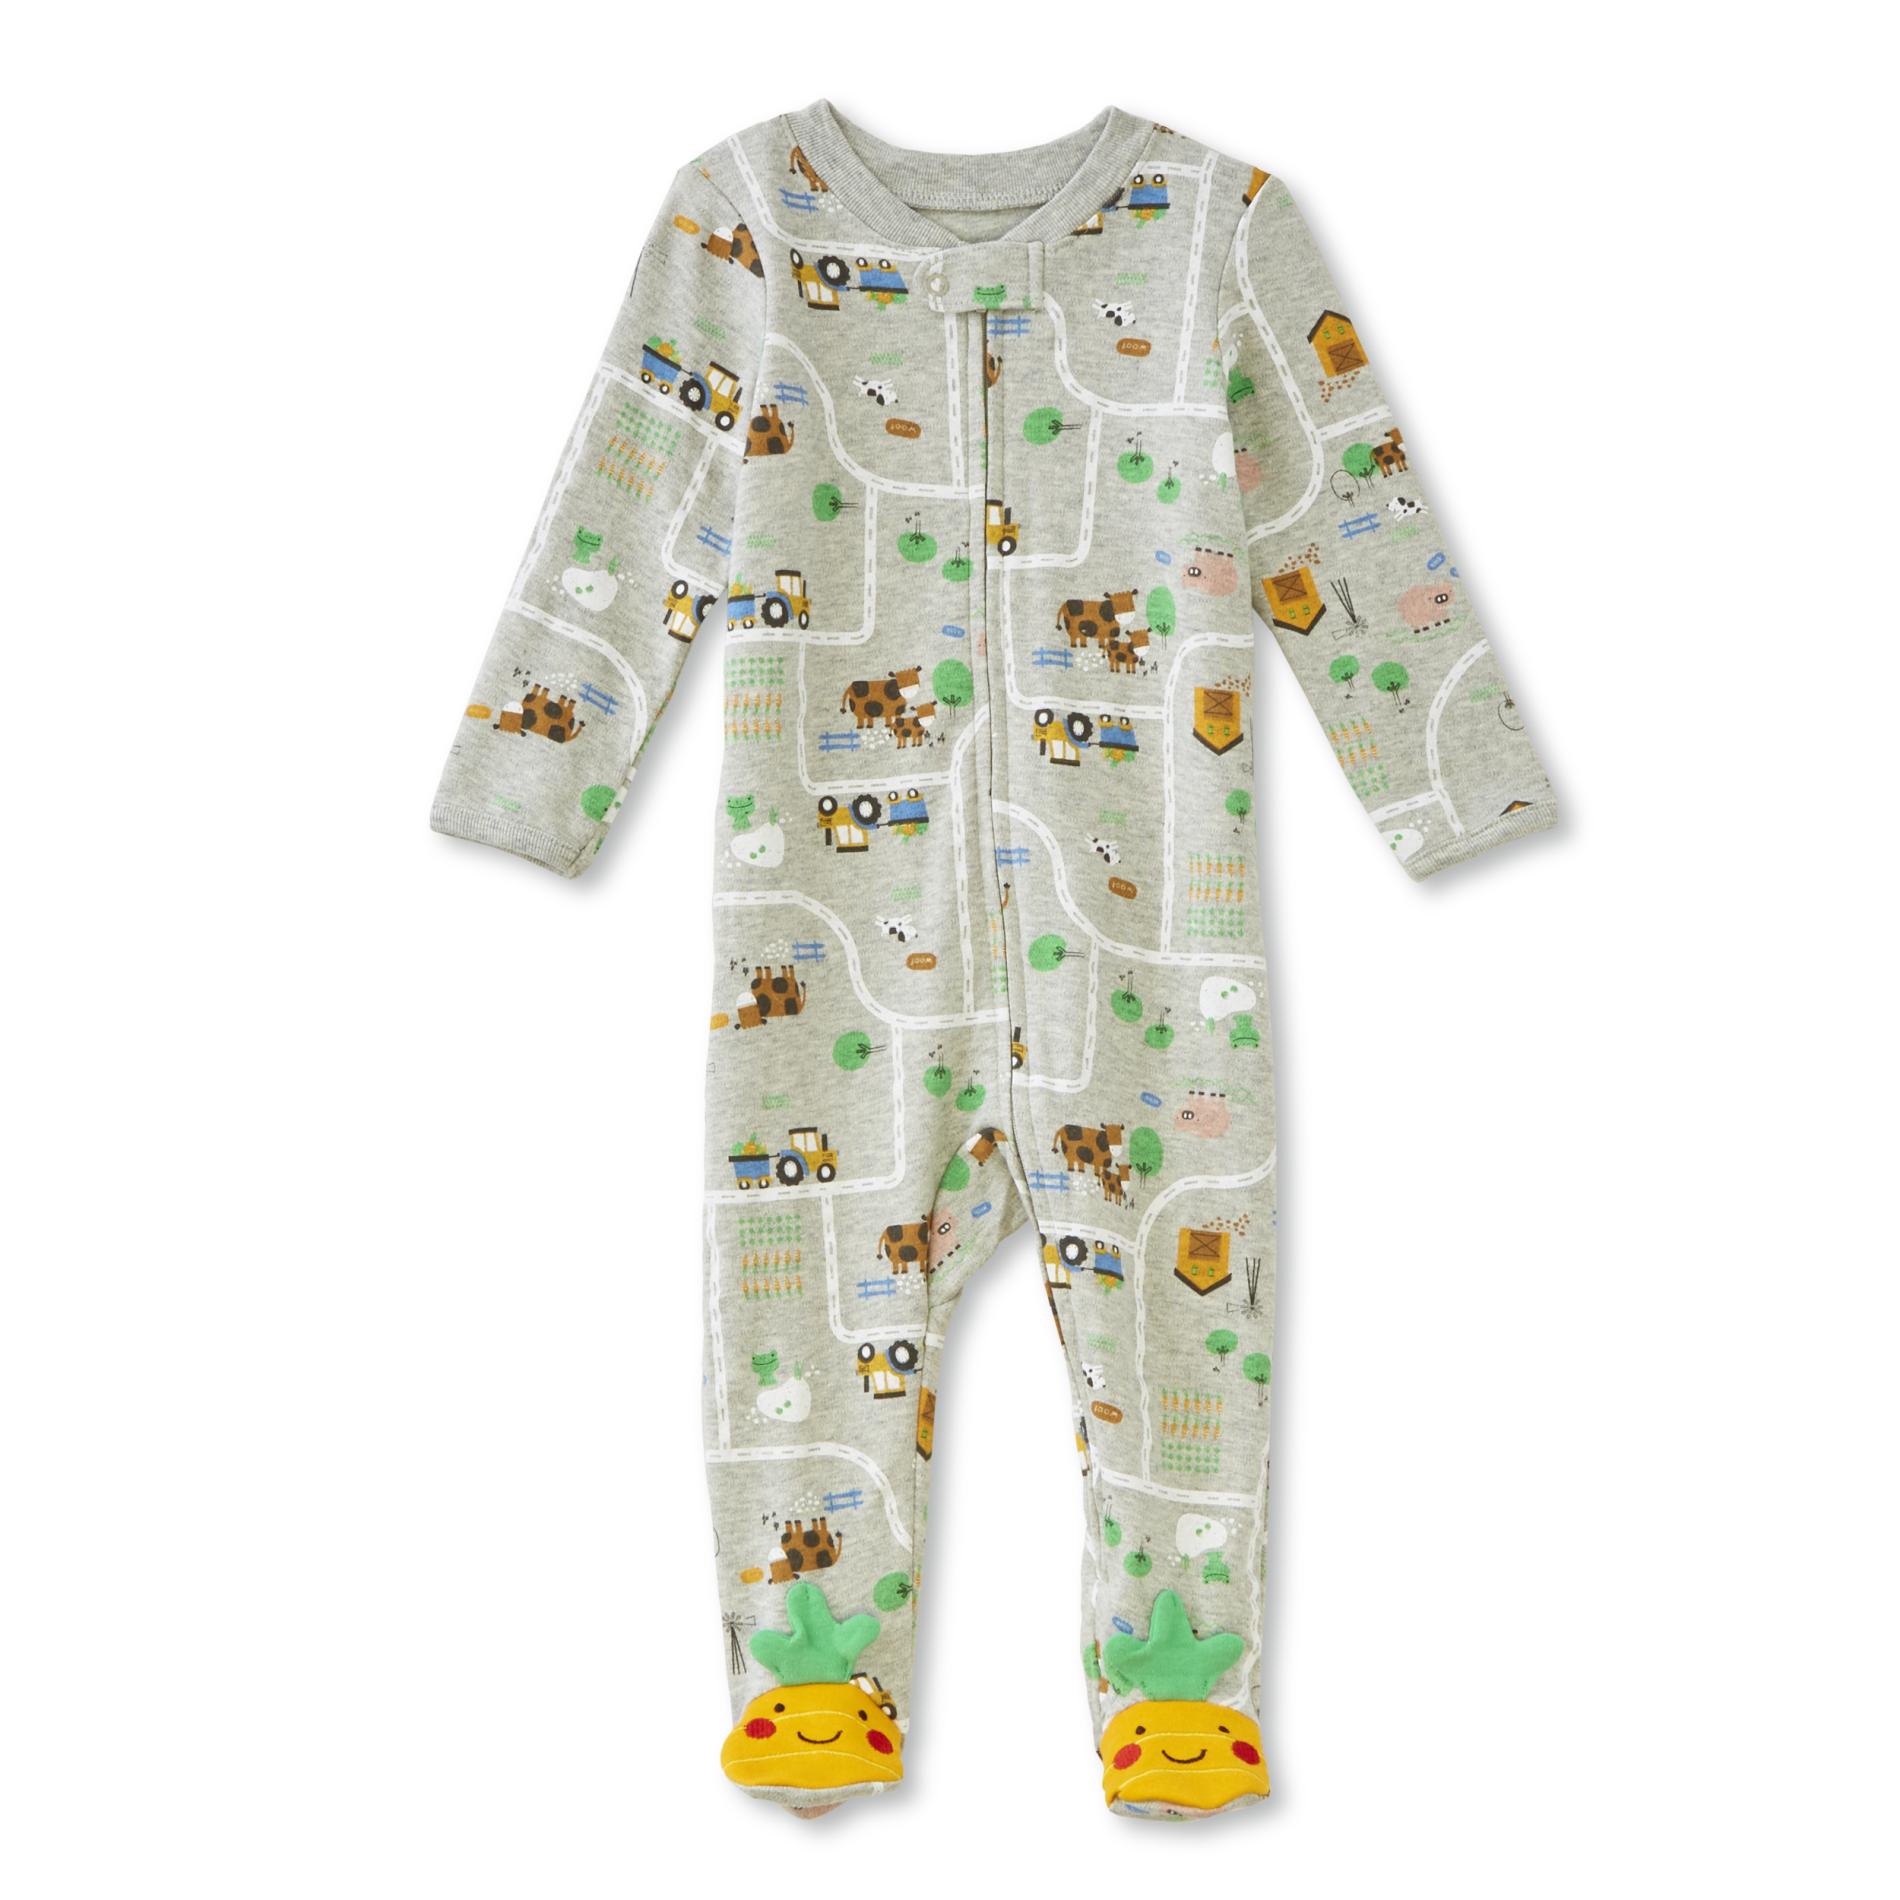 Little Wonders Infant Boys' Sleeper Pajamas - Farm